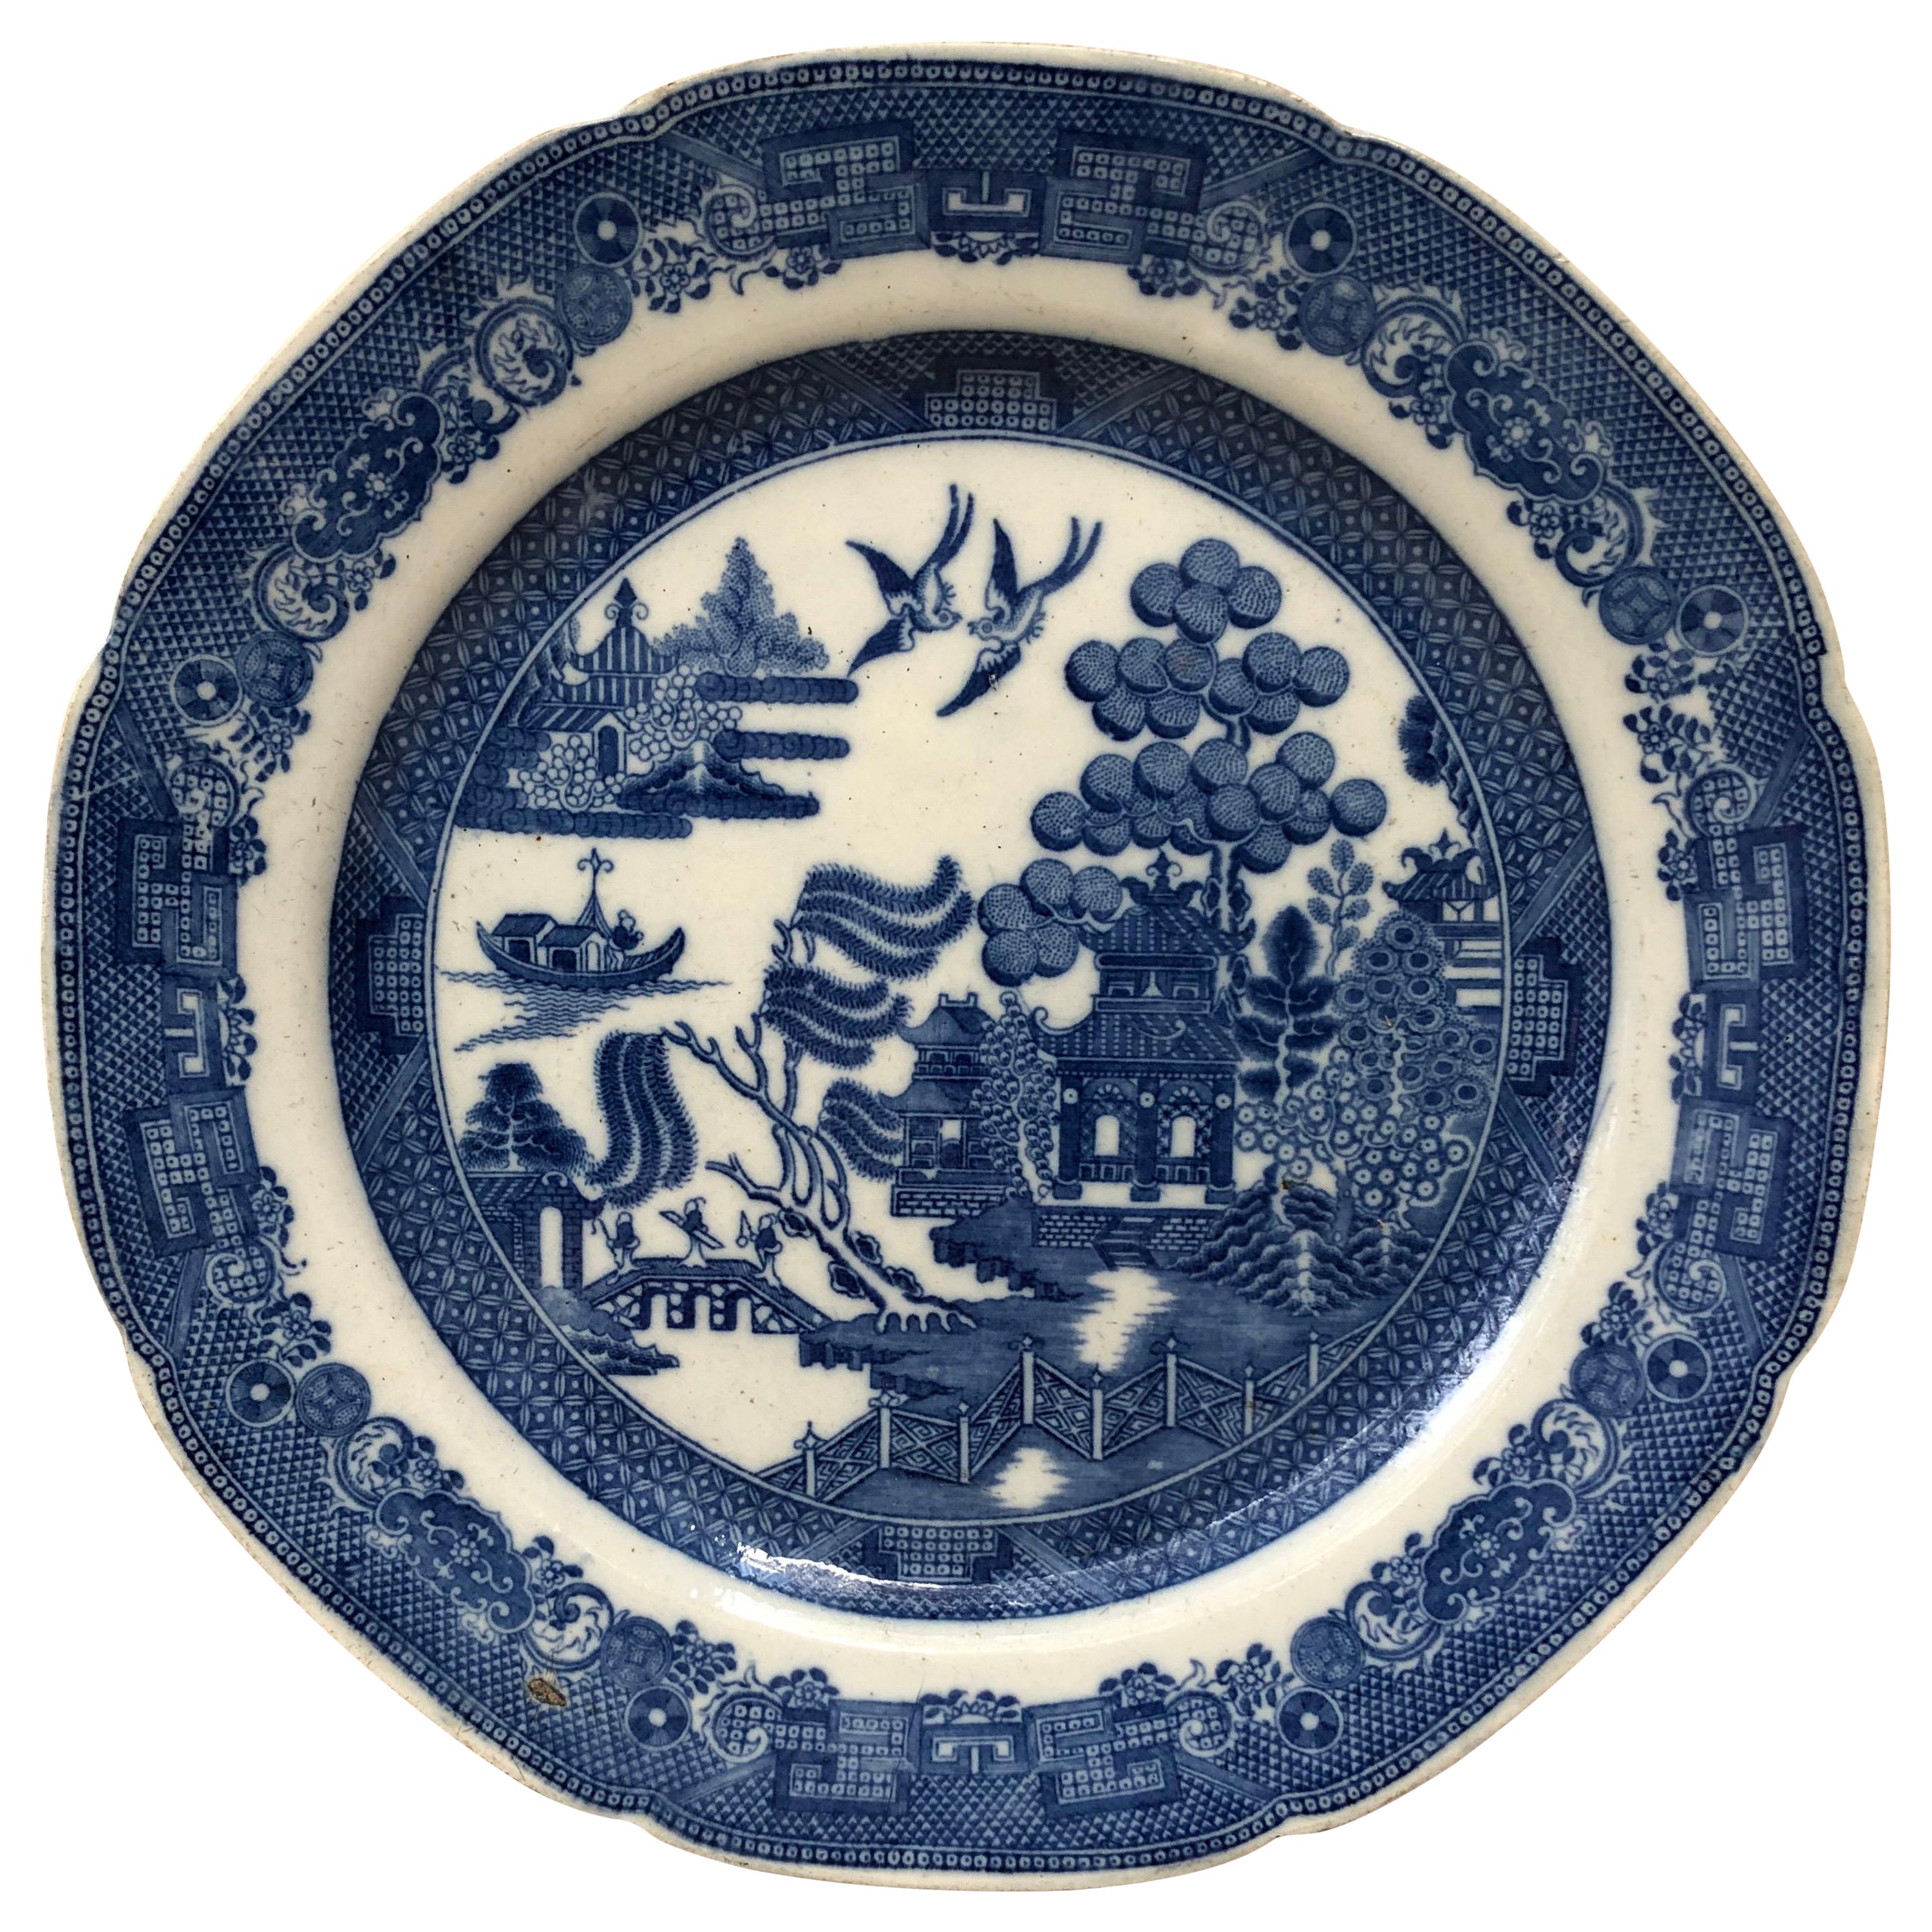 Großer englischer Chinoiserie-Teller in Blau und Weiß aus dem 19. Jahrhundert